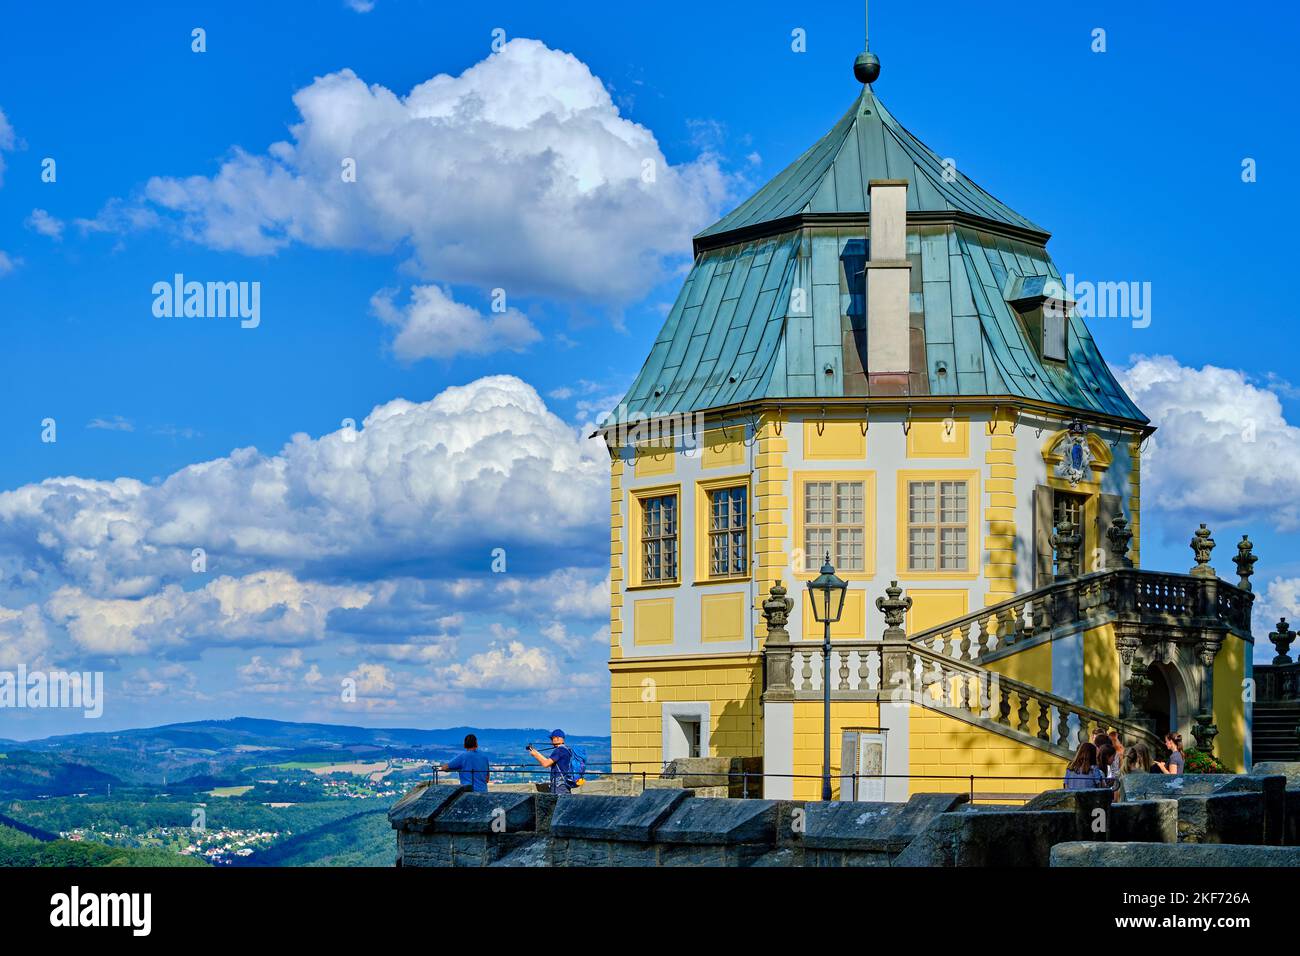 Schloss Fredericks, Festung Königstein, Königstein, Sachsenschweiz, Sachsen, Deutschland. Stockfoto